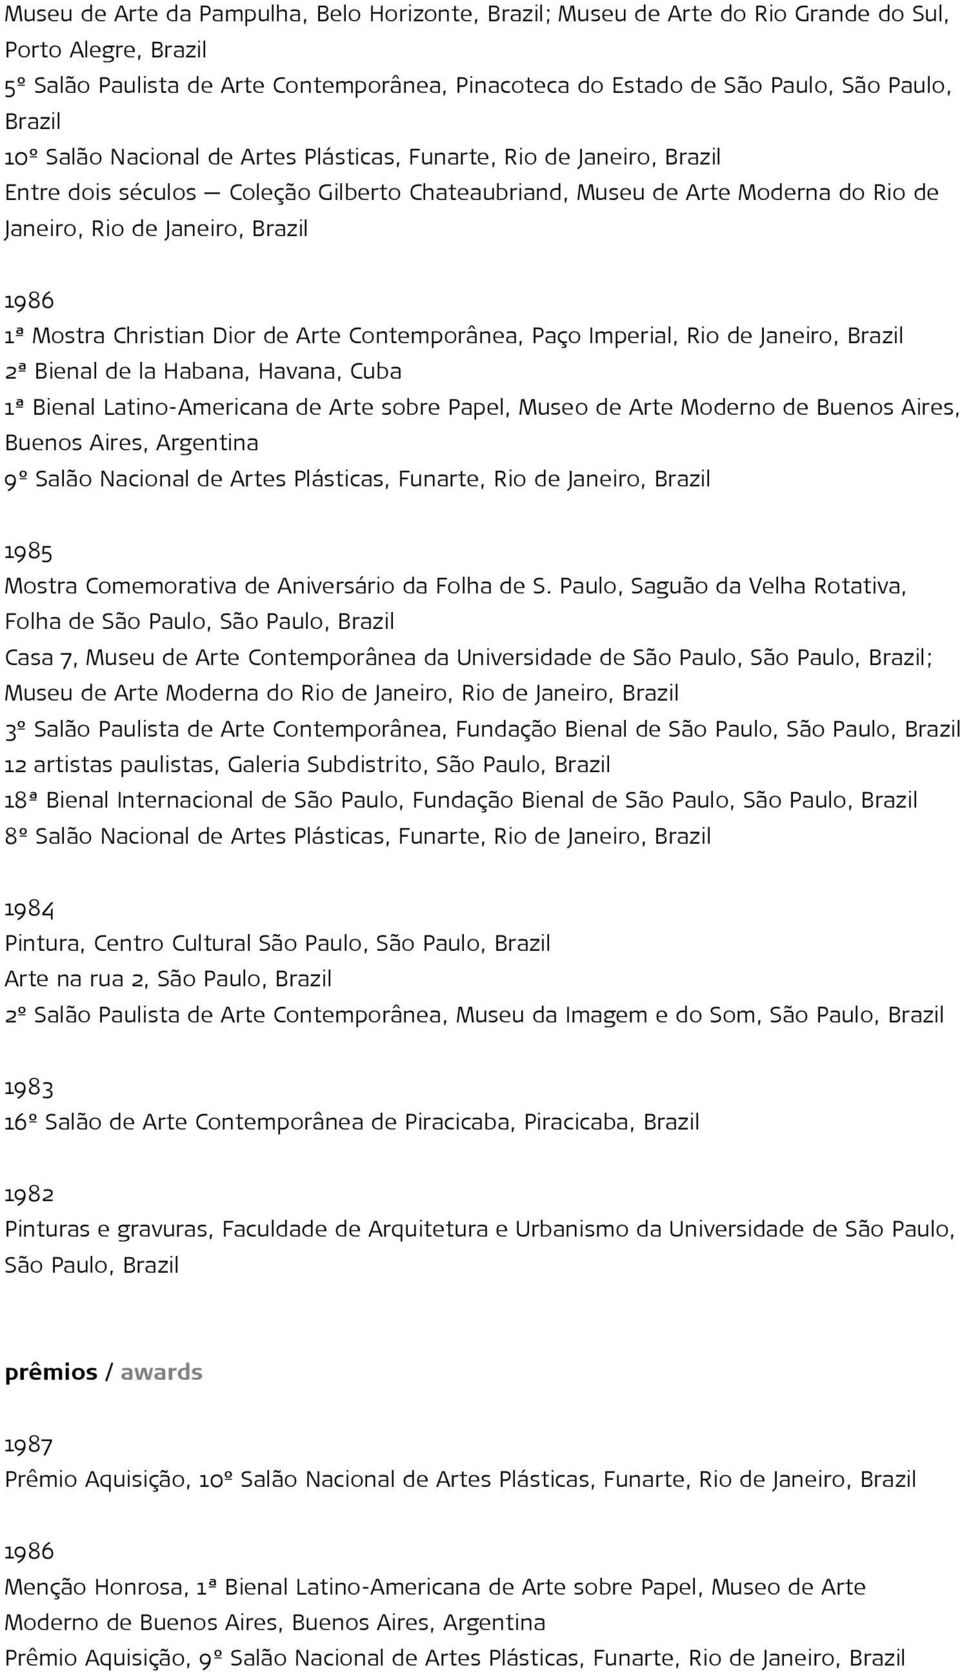 1ª Mostra Christian Dior de Arte Contemporânea, Paço Imperial, Rio de Janeiro, Brazil 2ª Bienal de la Habana, Havana, Cuba 1ª Bienal Latino-Americana de Arte sobre Papel, Museo de Arte Moderno de